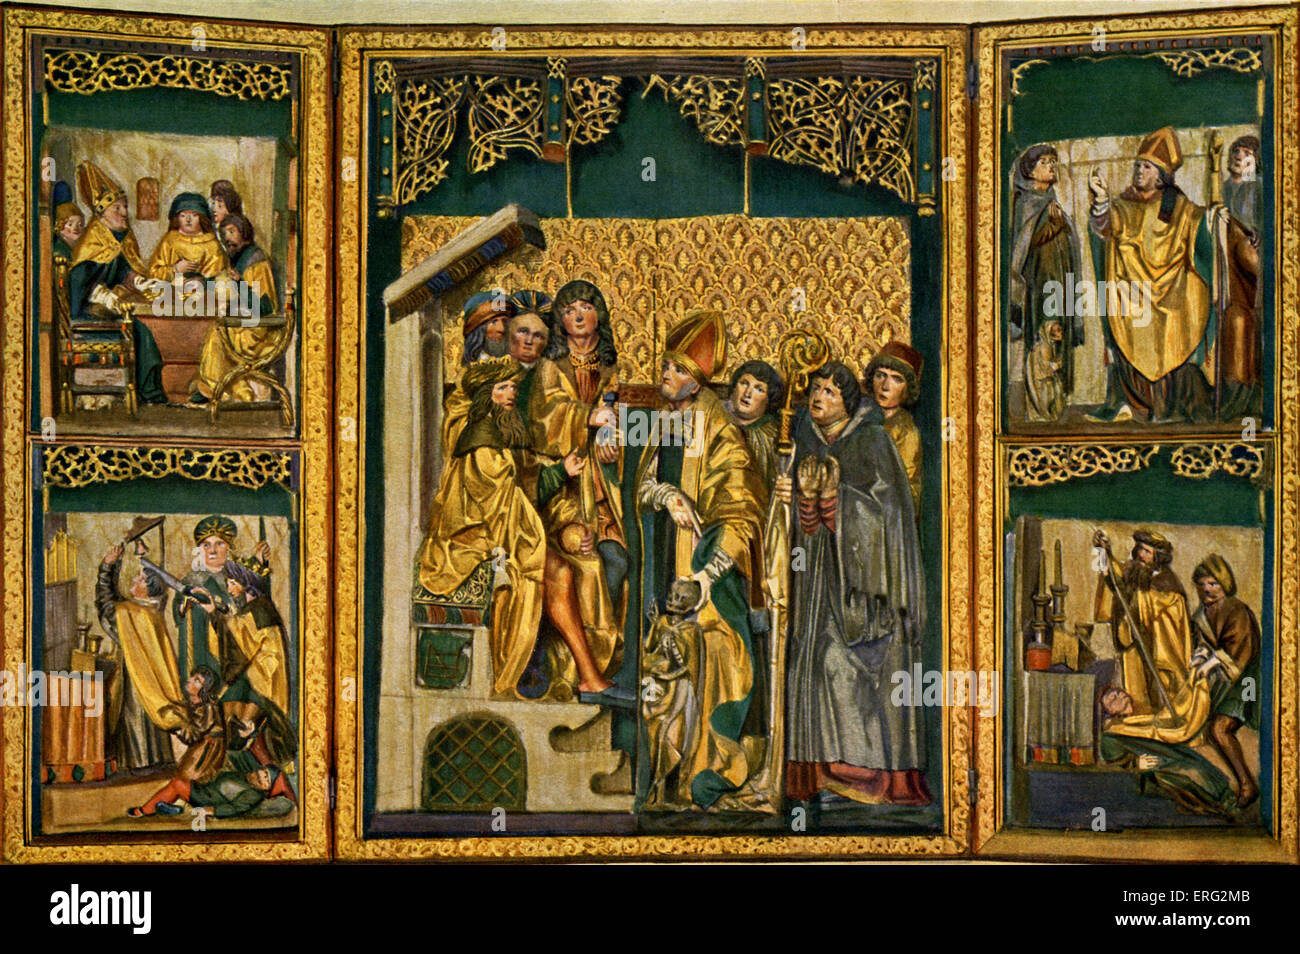 Das Leben und Martyrium des Heiligen Stanislaus, gemalte Triptychon. St. Stanislaus polnischer Bischof und Heiliger 26 Juli 1030-11 April 1079. Stockfoto